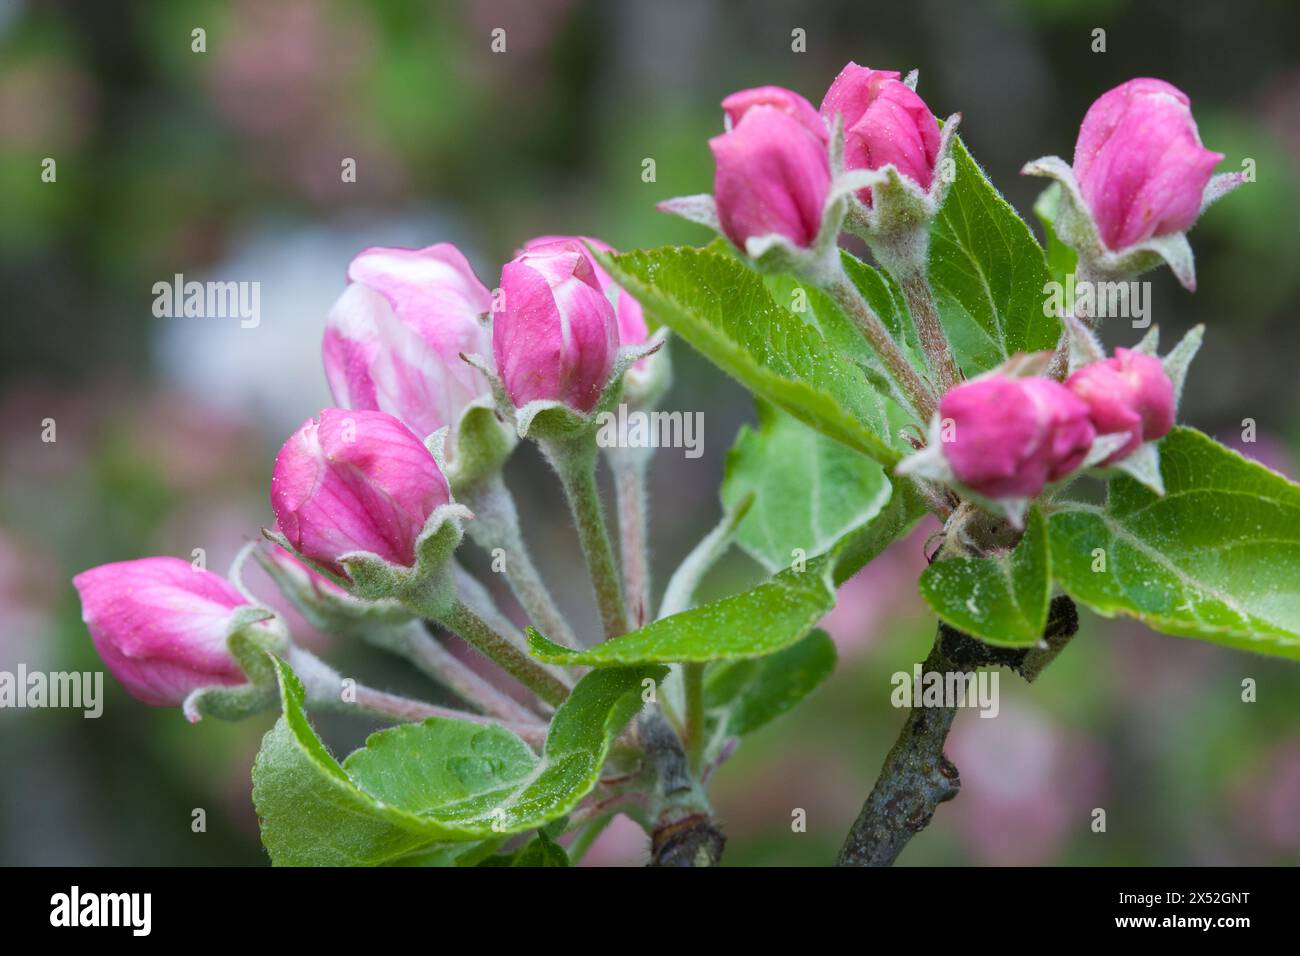 Delicati fiori rosa adornano il melo, in attesa di frutti futuri. Foto Stock